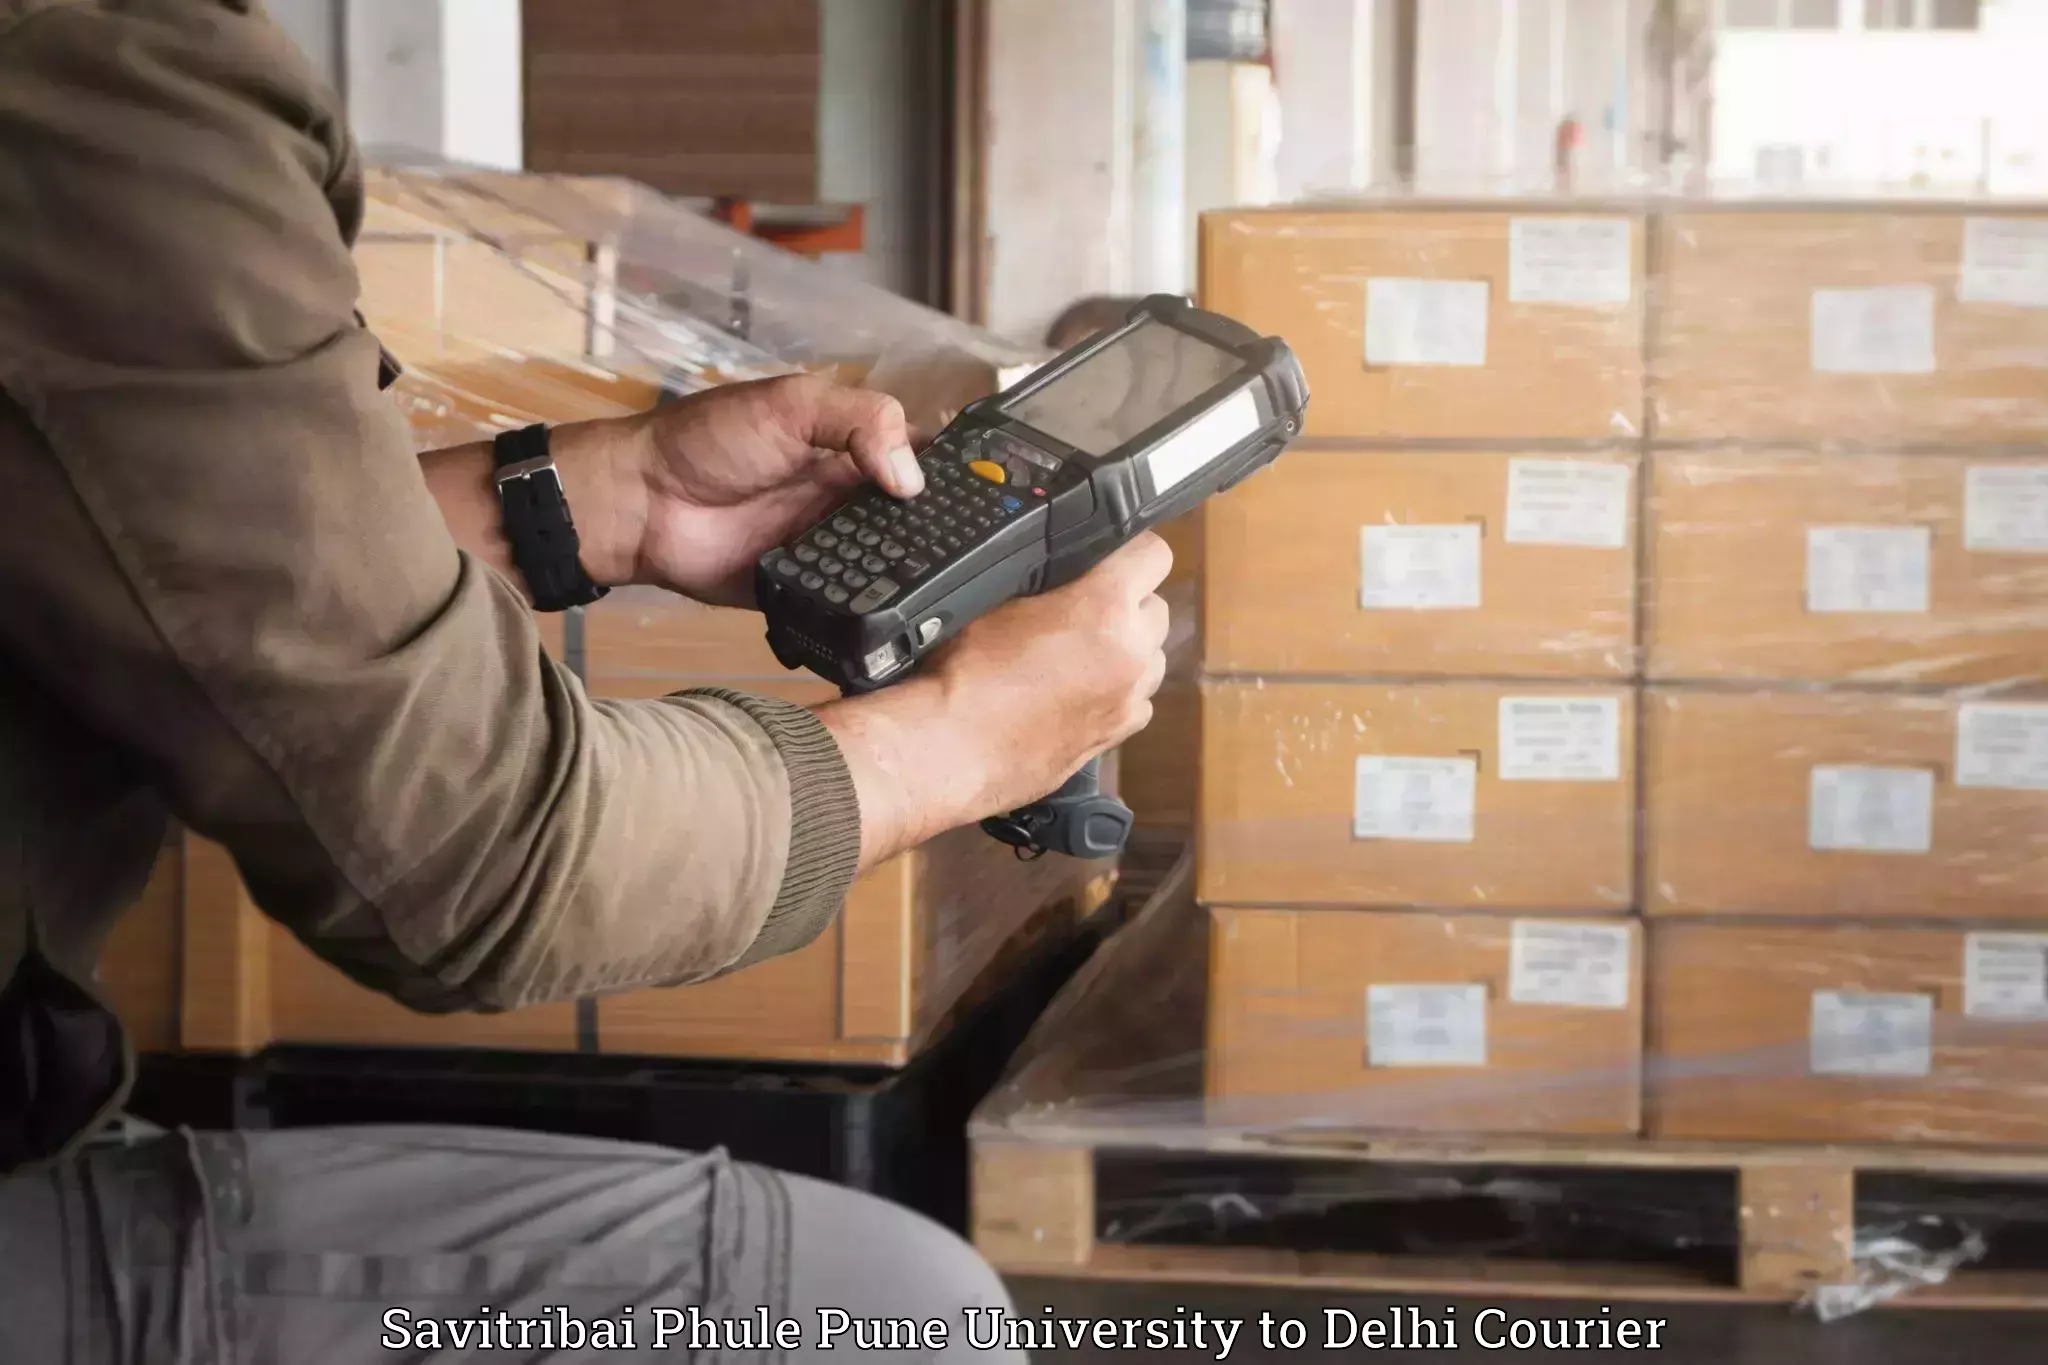 Electronic items luggage shipping Savitribai Phule Pune University to NCR